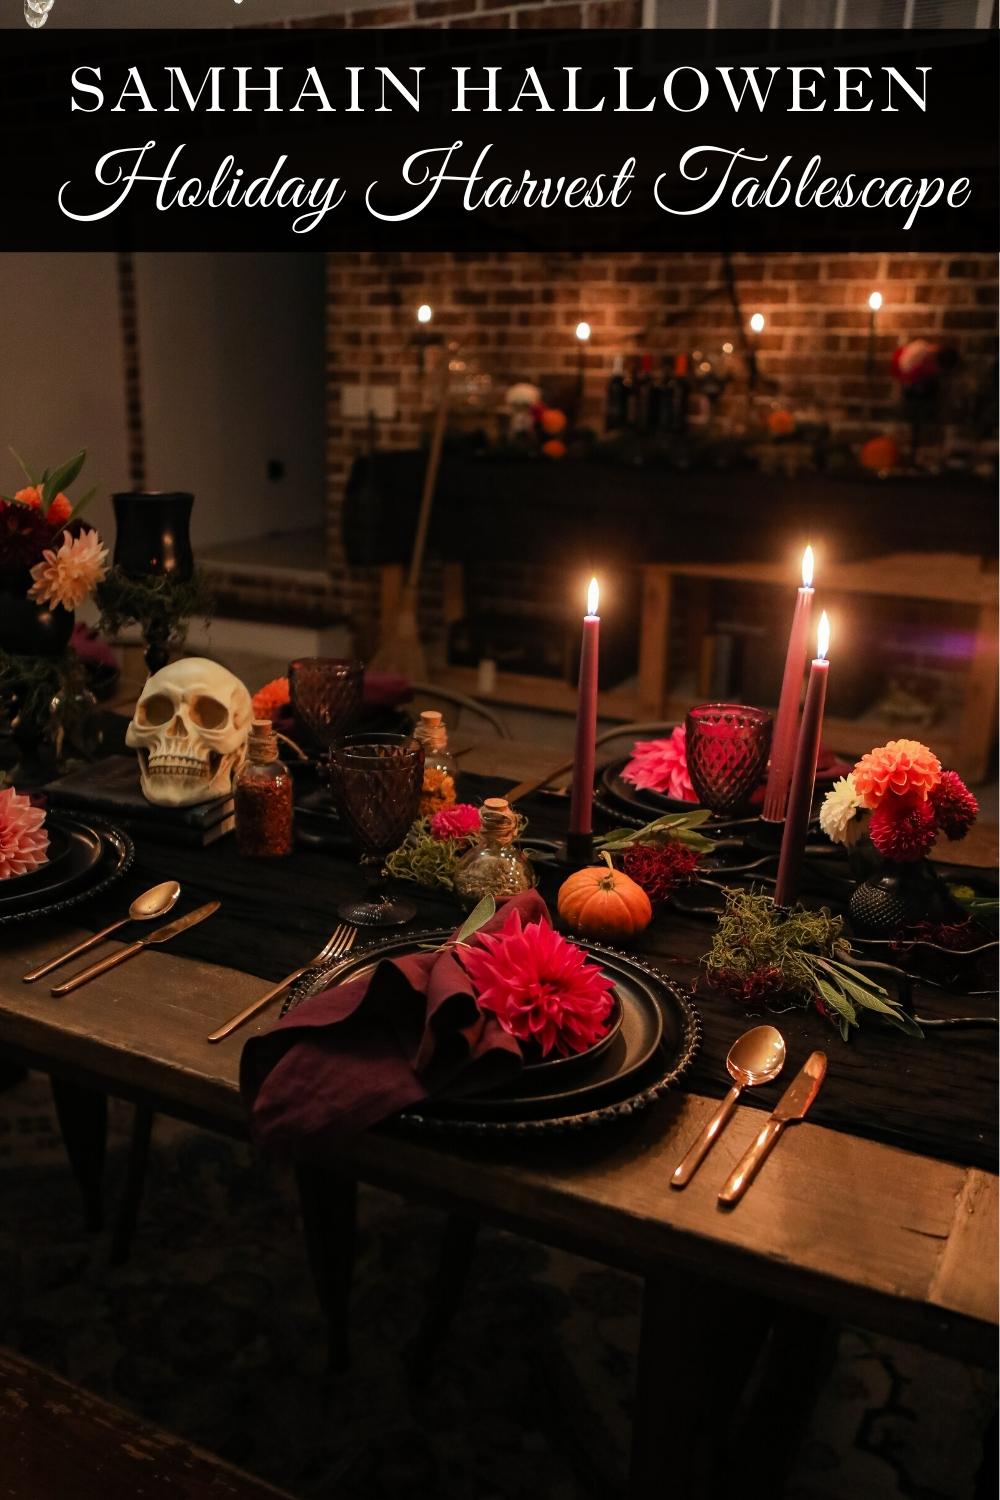 Samhain Halloween tablescape